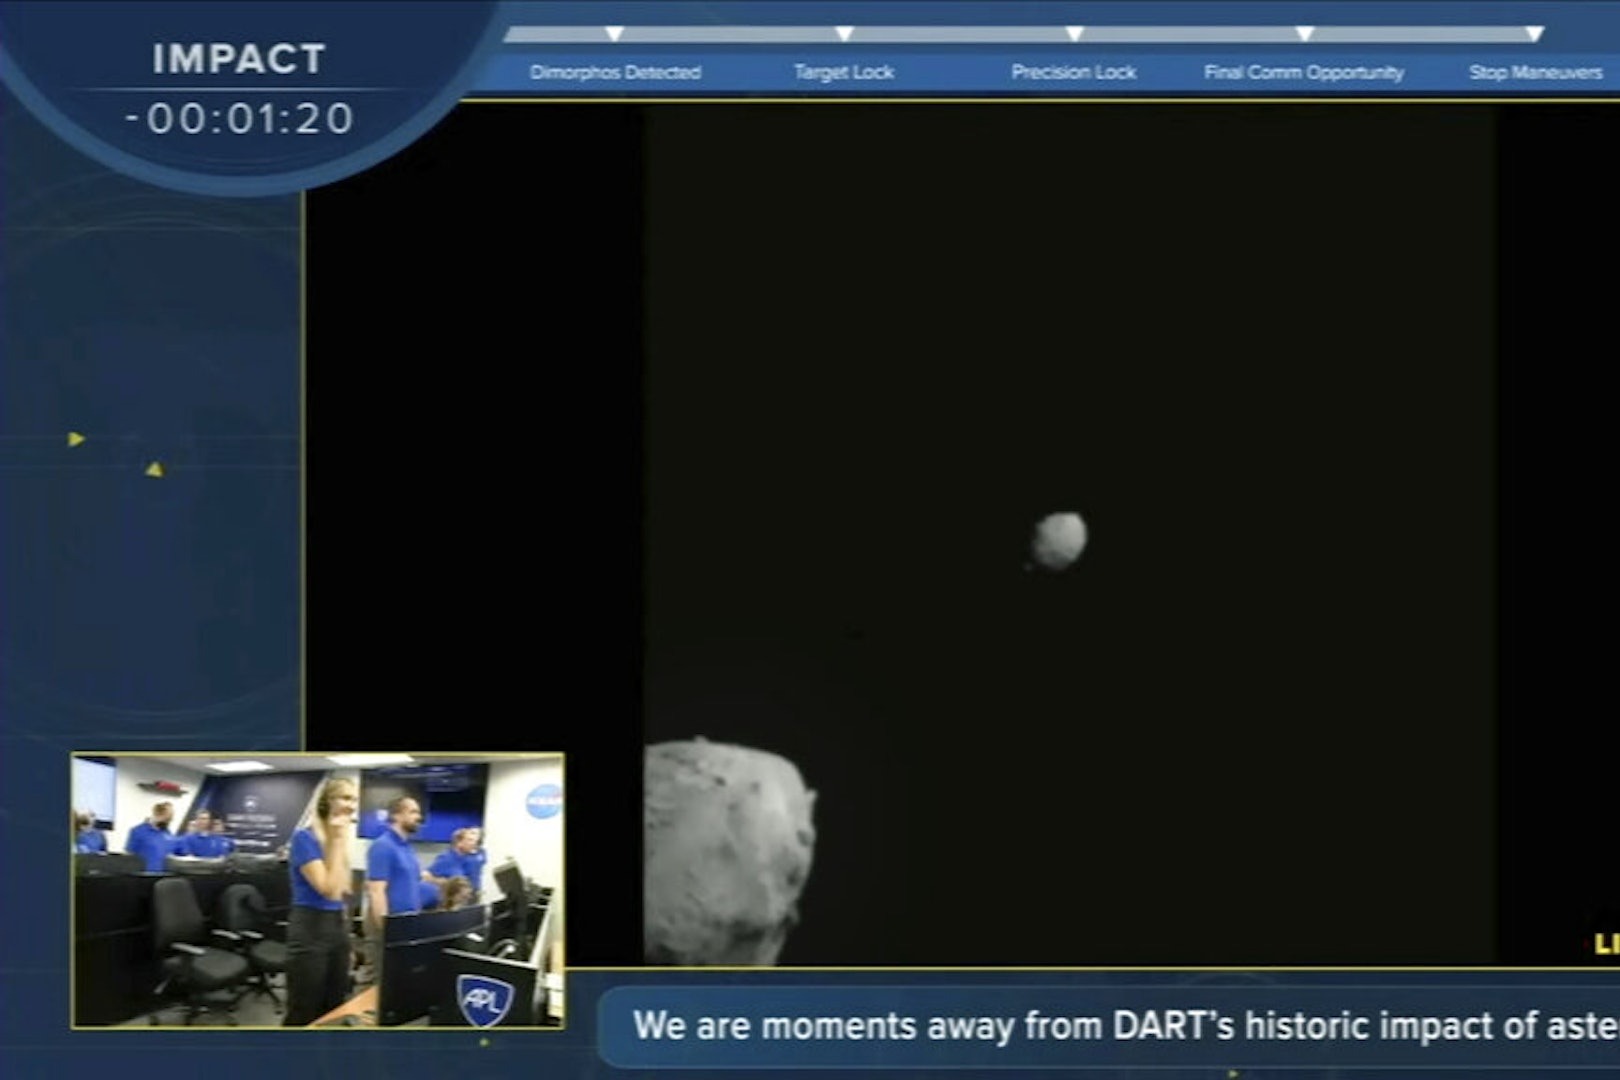 飛行器撞擊目標小行星改變軌道 NASA成功「拯救地球」